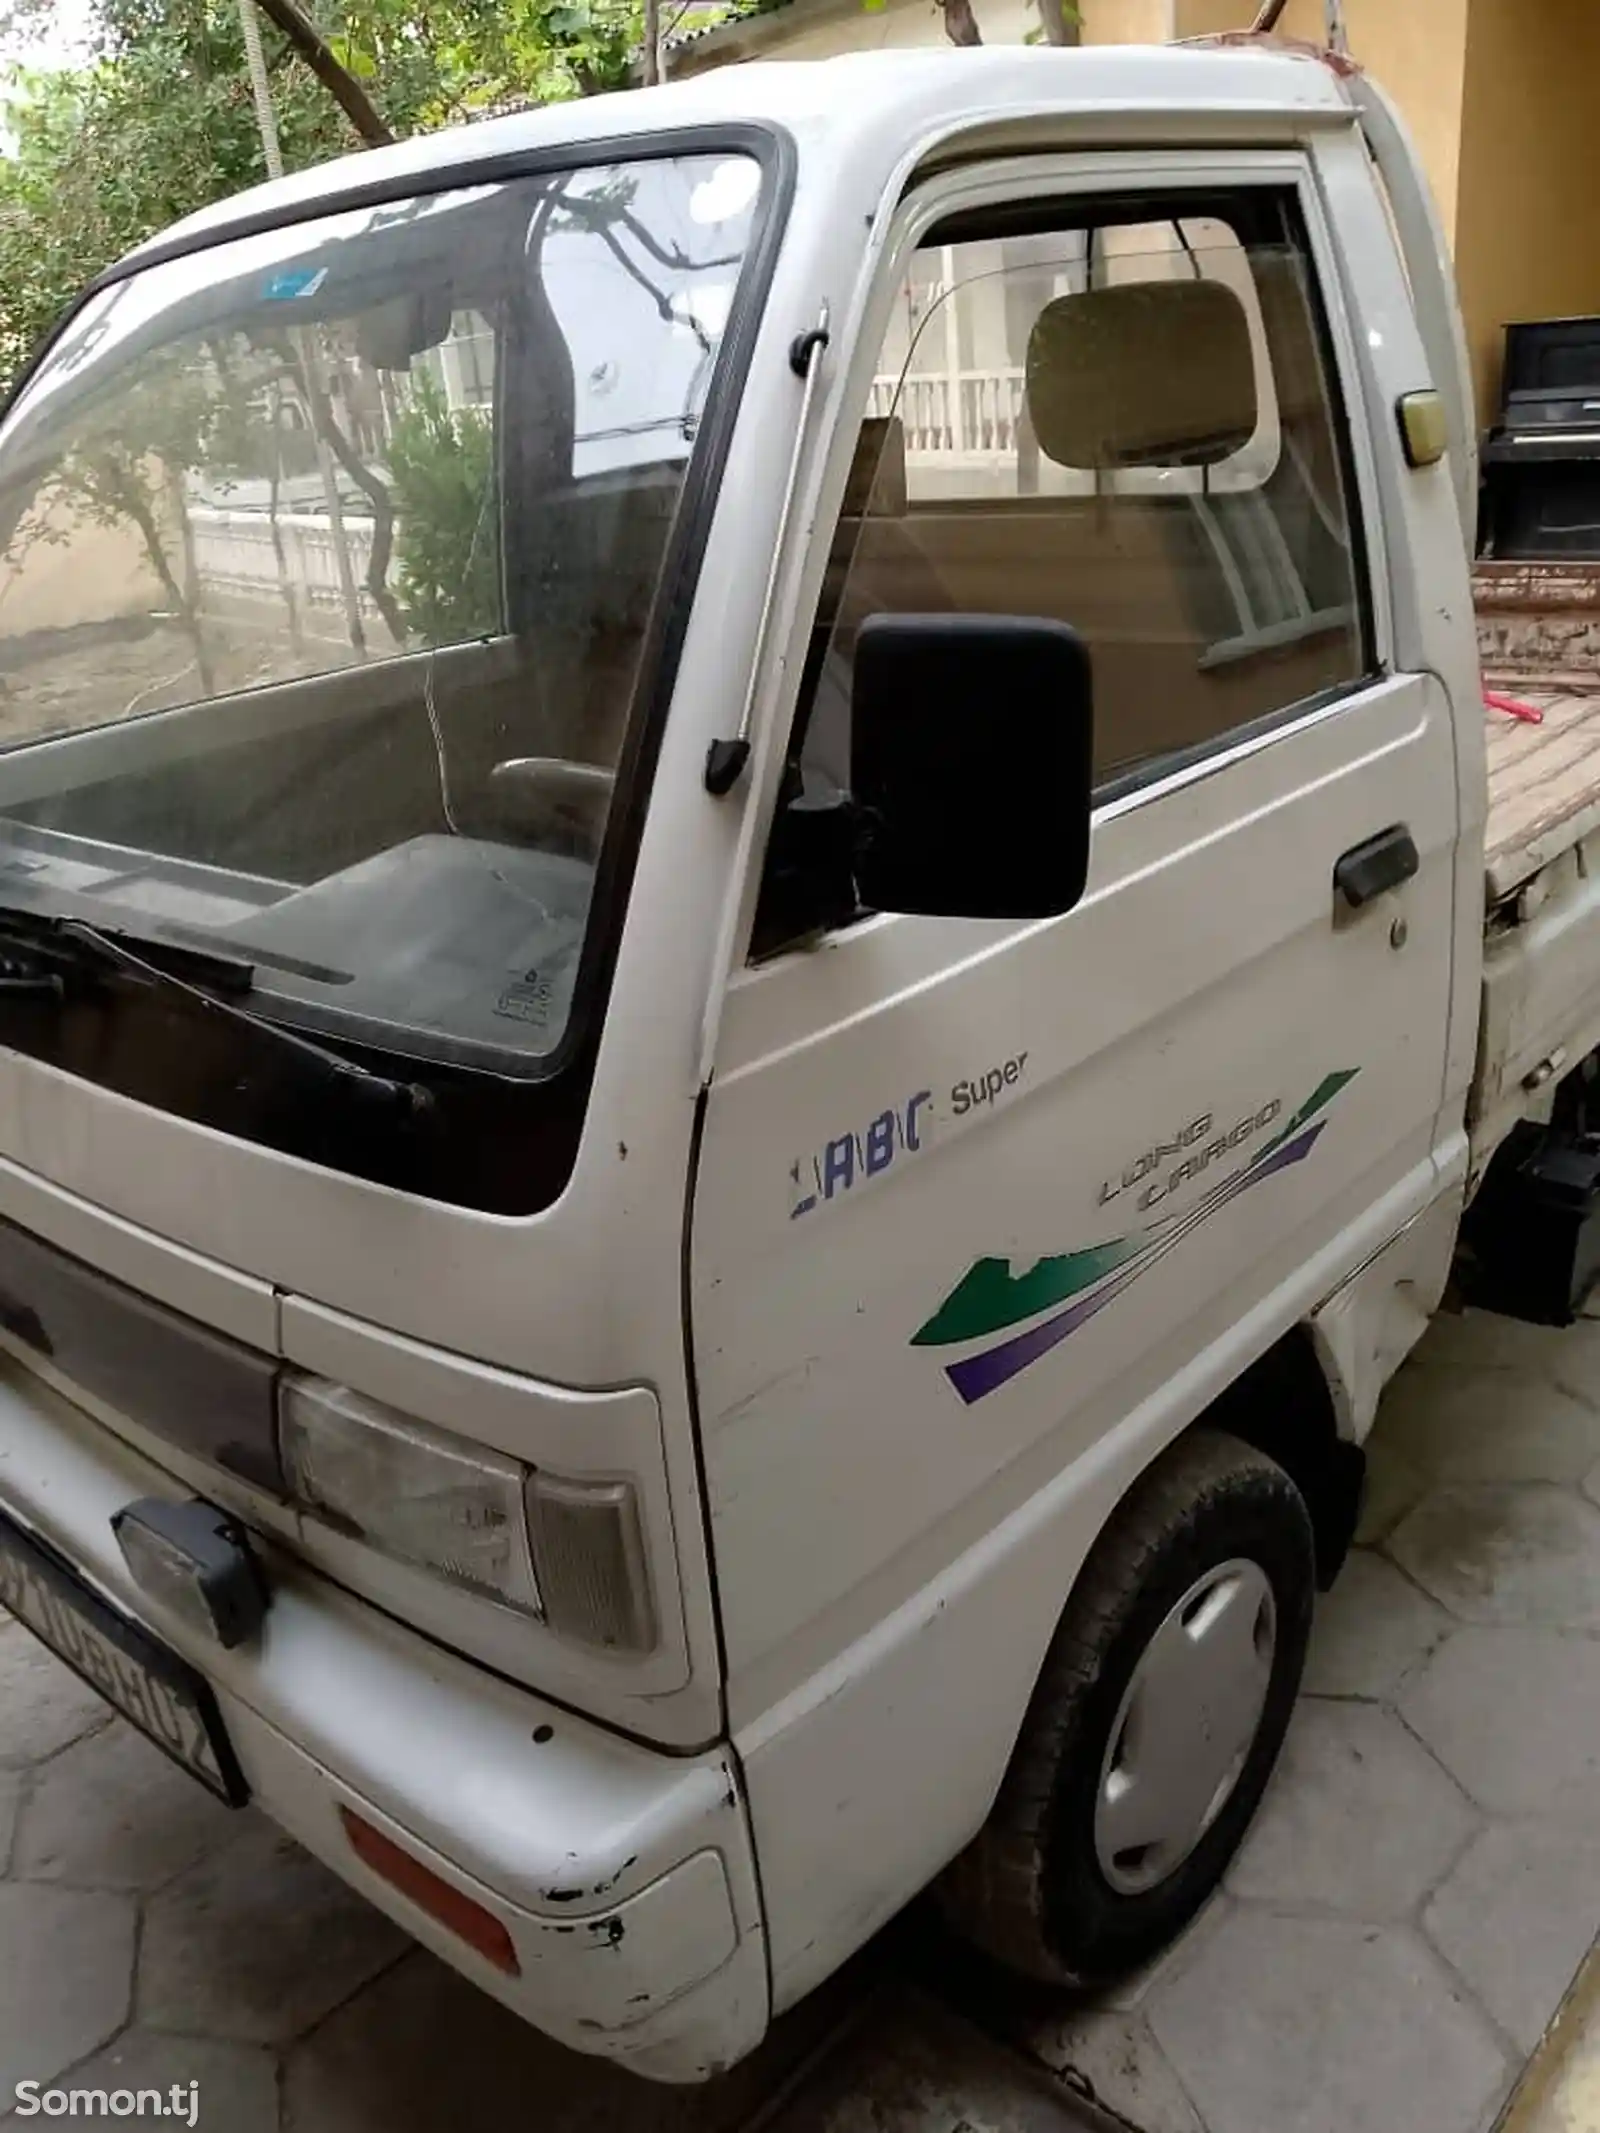 Бортовой автомобиль Daewoo Labo, 1996-1